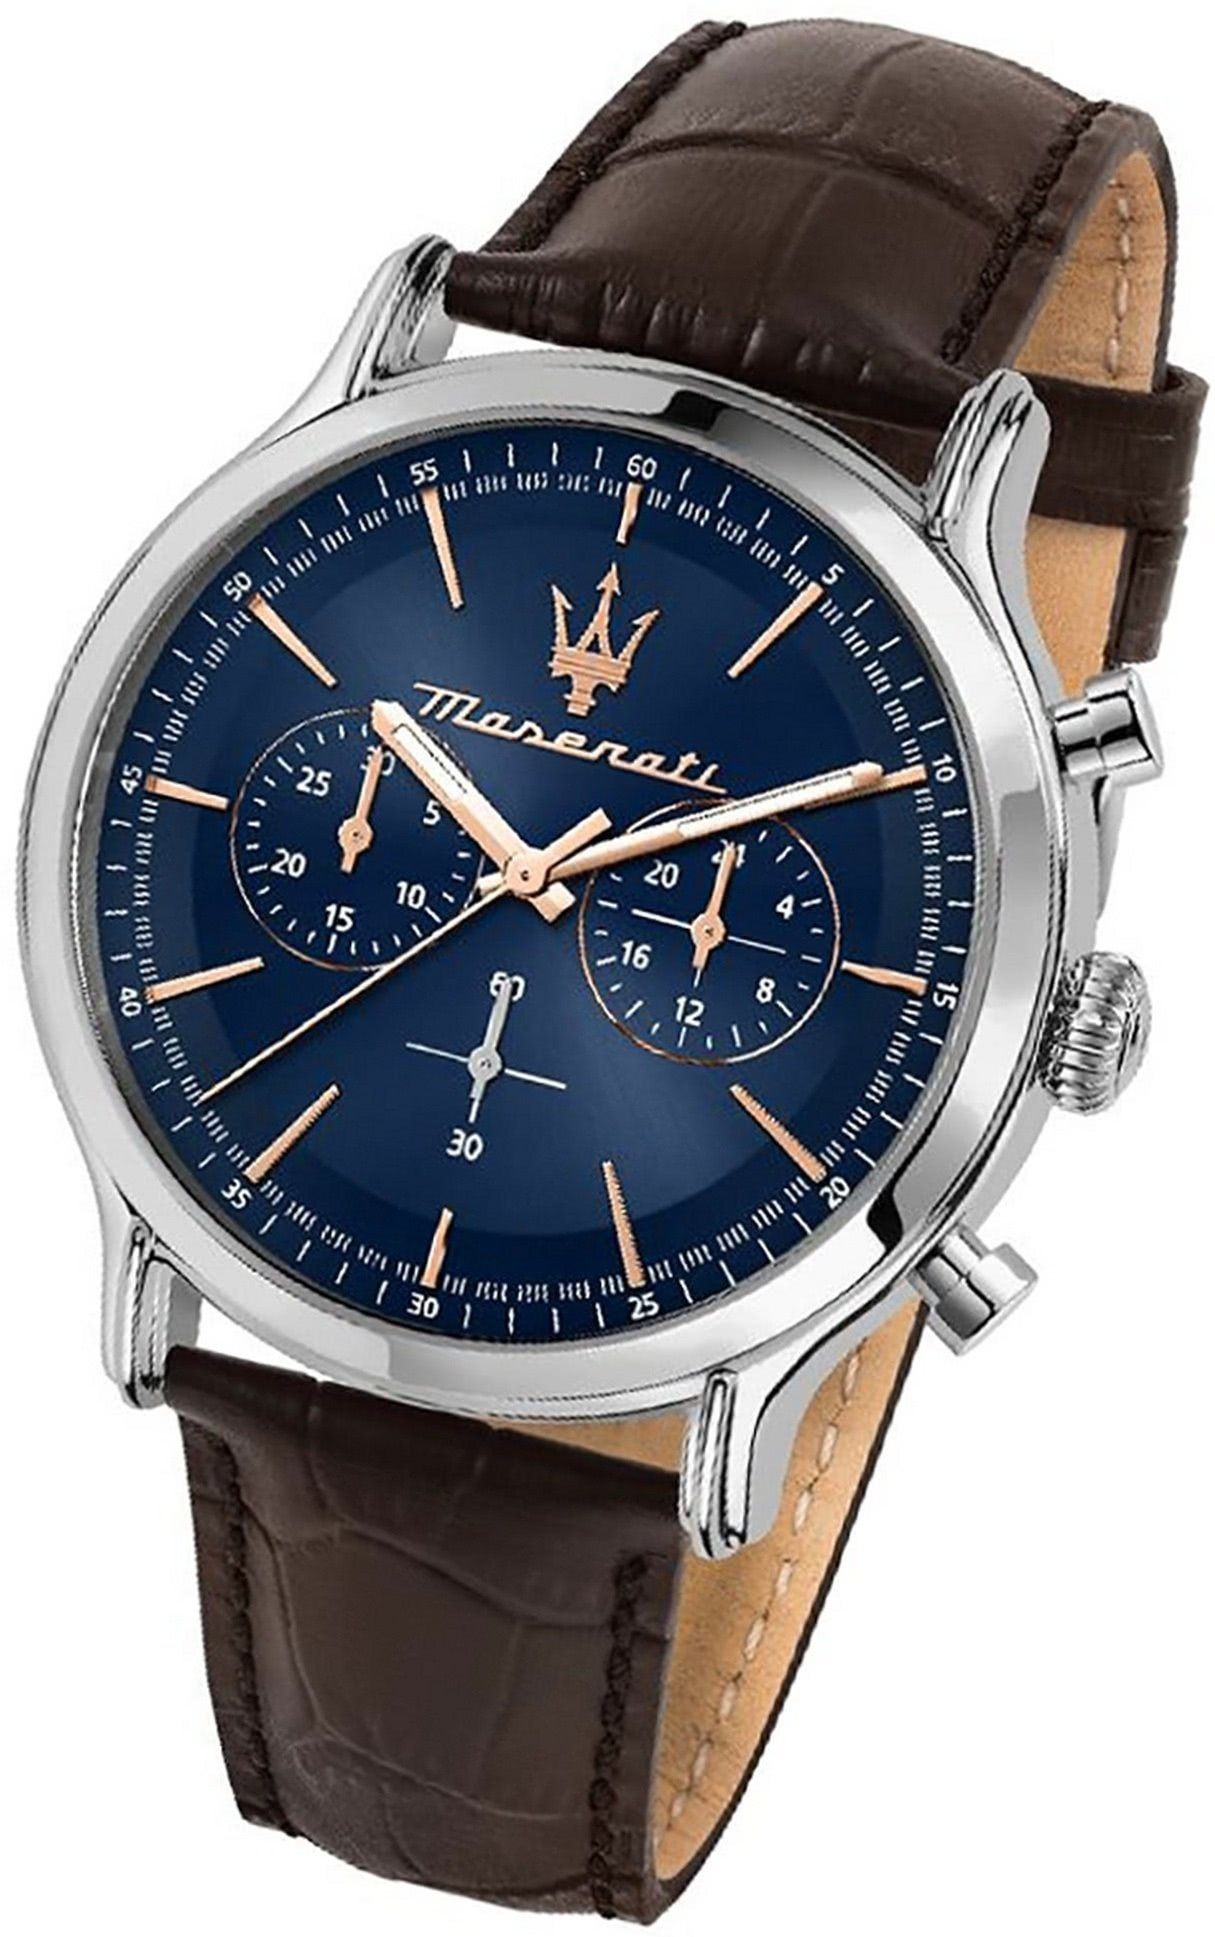 MASERATI Chronograph Maserati Leder Armband-Uhr, Herrenuhr Lederarmband, rundes Gehäuse, groß (ca. 42mm) blau